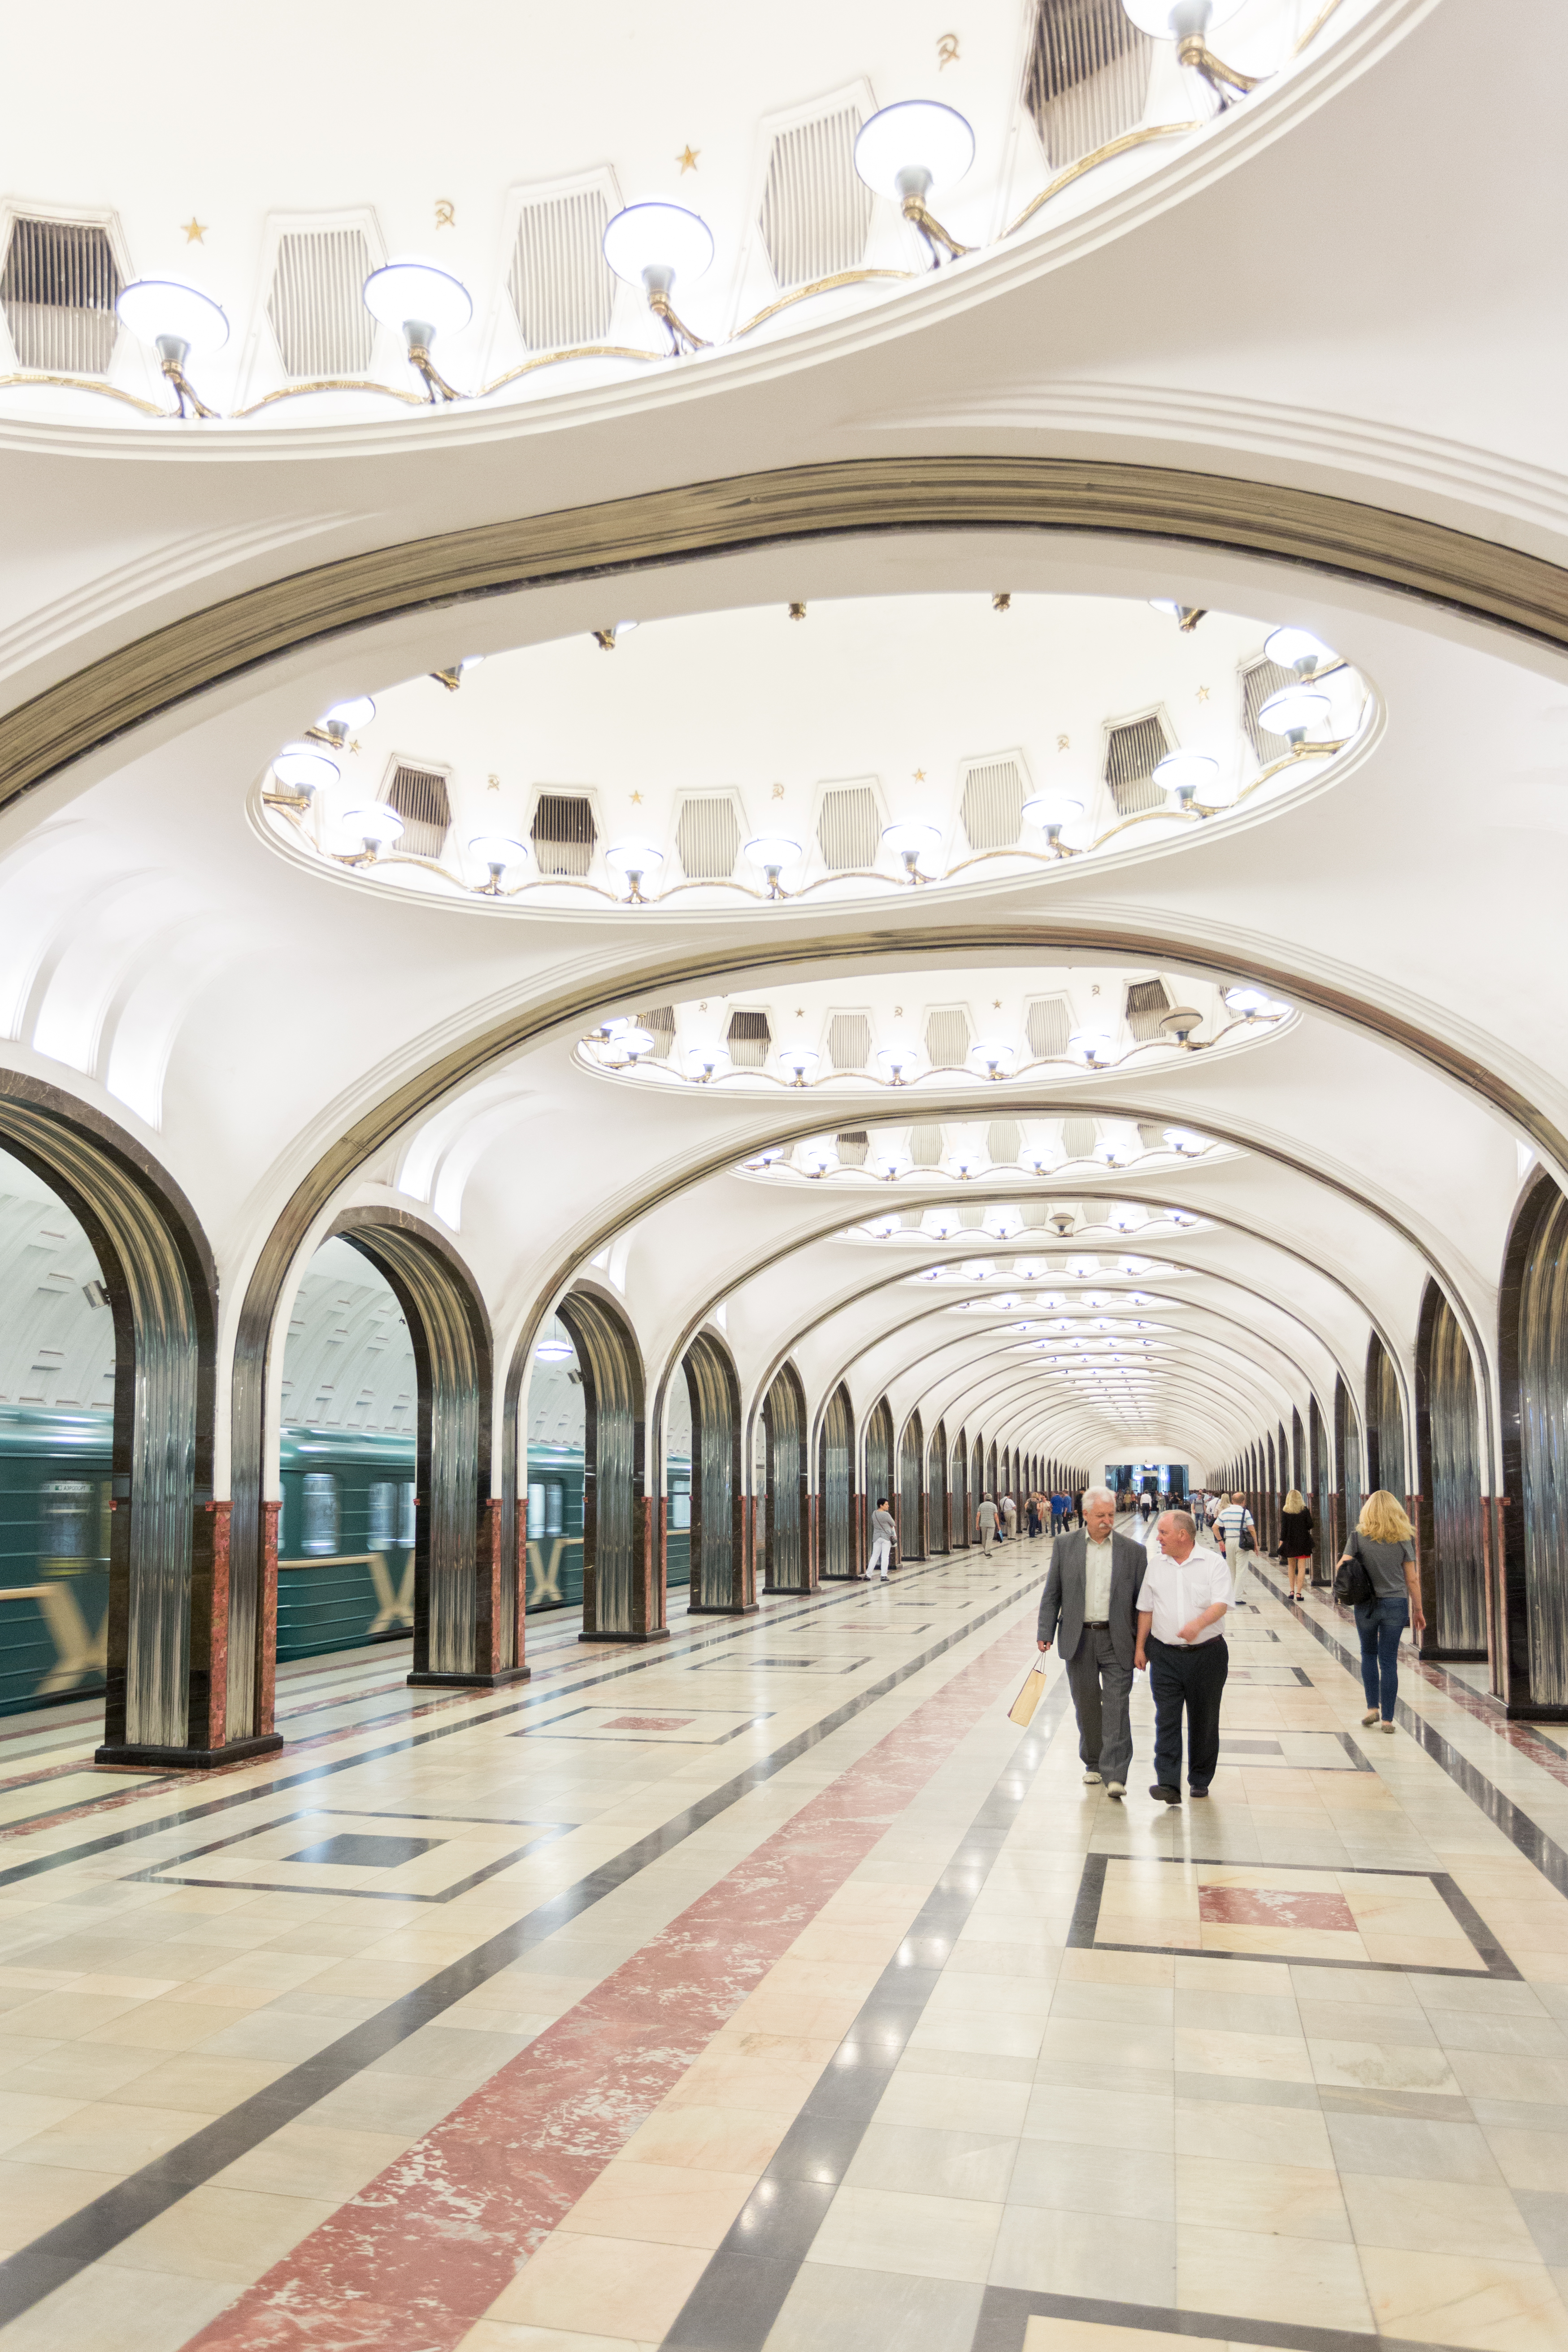 Station de métro à Moscou avec des passants et un métro qui rentre en station